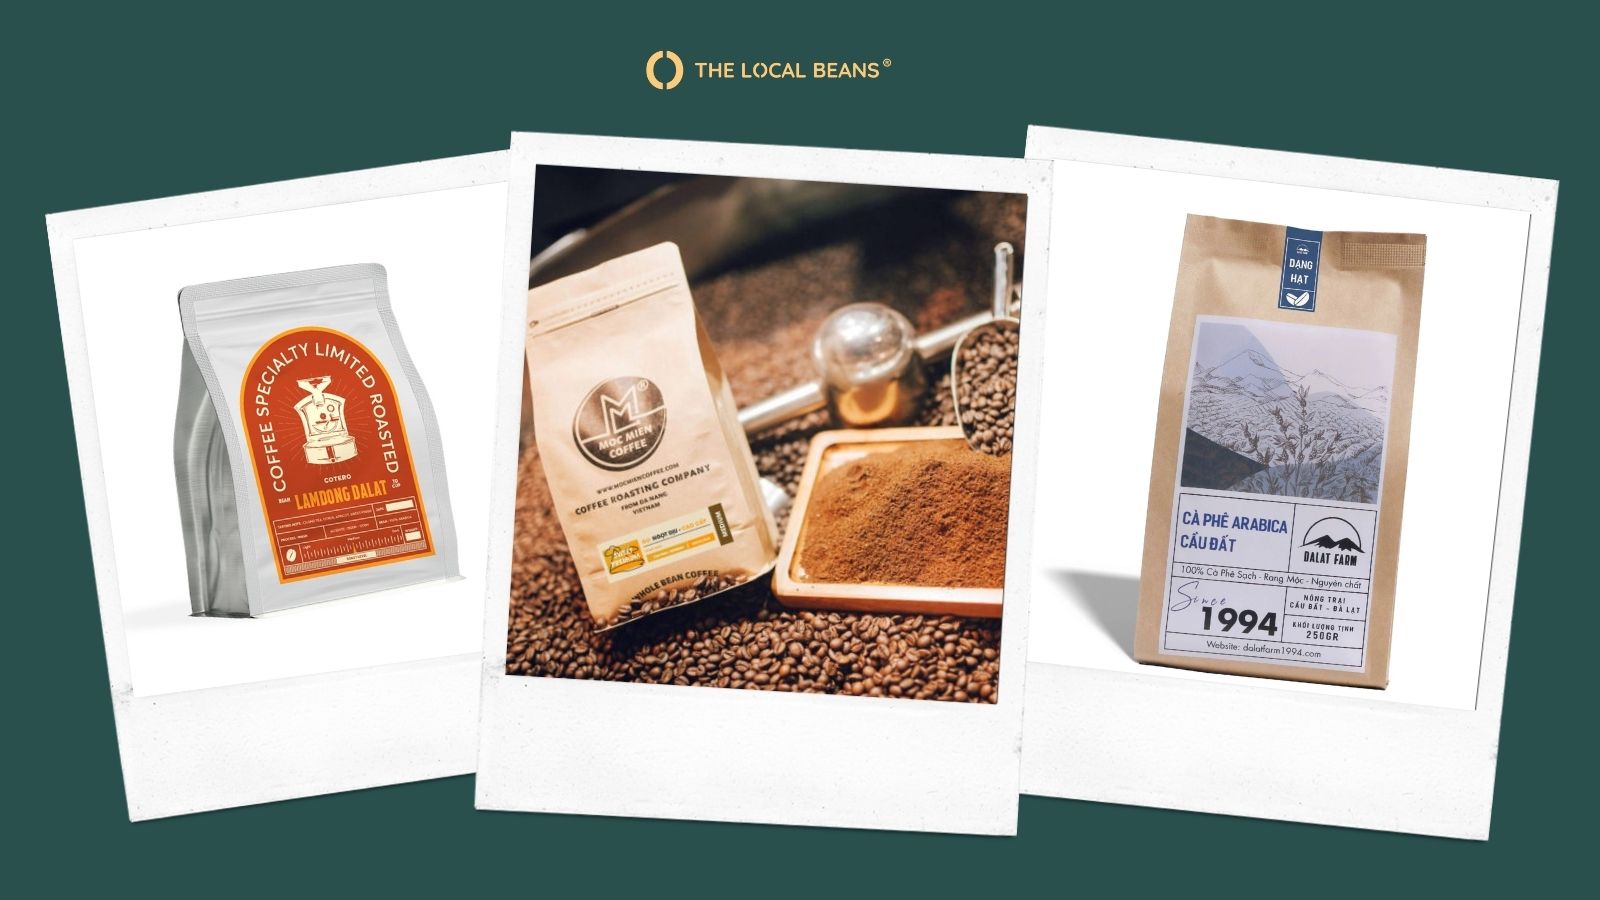 Gói cà phê hạt Arabica Cầu Đất tại Cotero, Mộc Miên và Dalatfarm